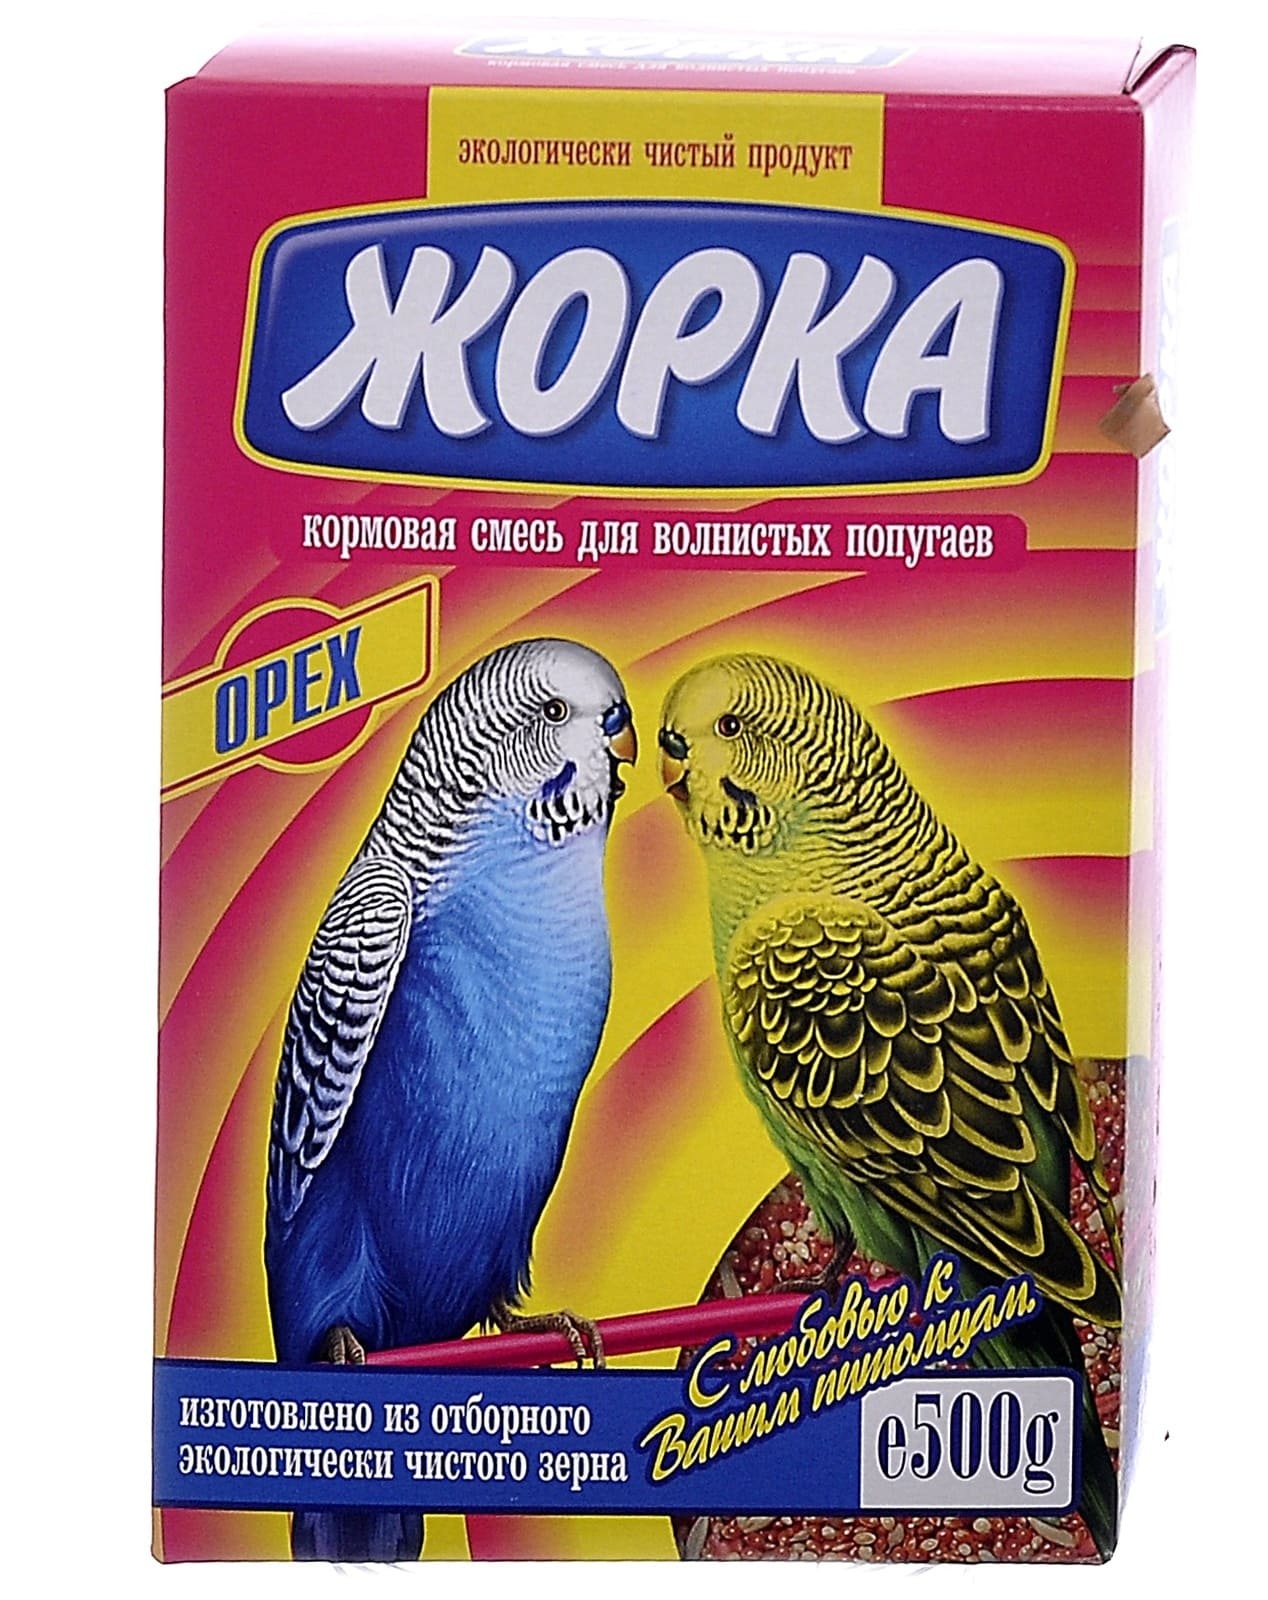 Жорка Жорка для волнистых попугаев с орехами (коробка) (500 г) жорка жорка lux для волнистых попугаев экстра пакет 450 г